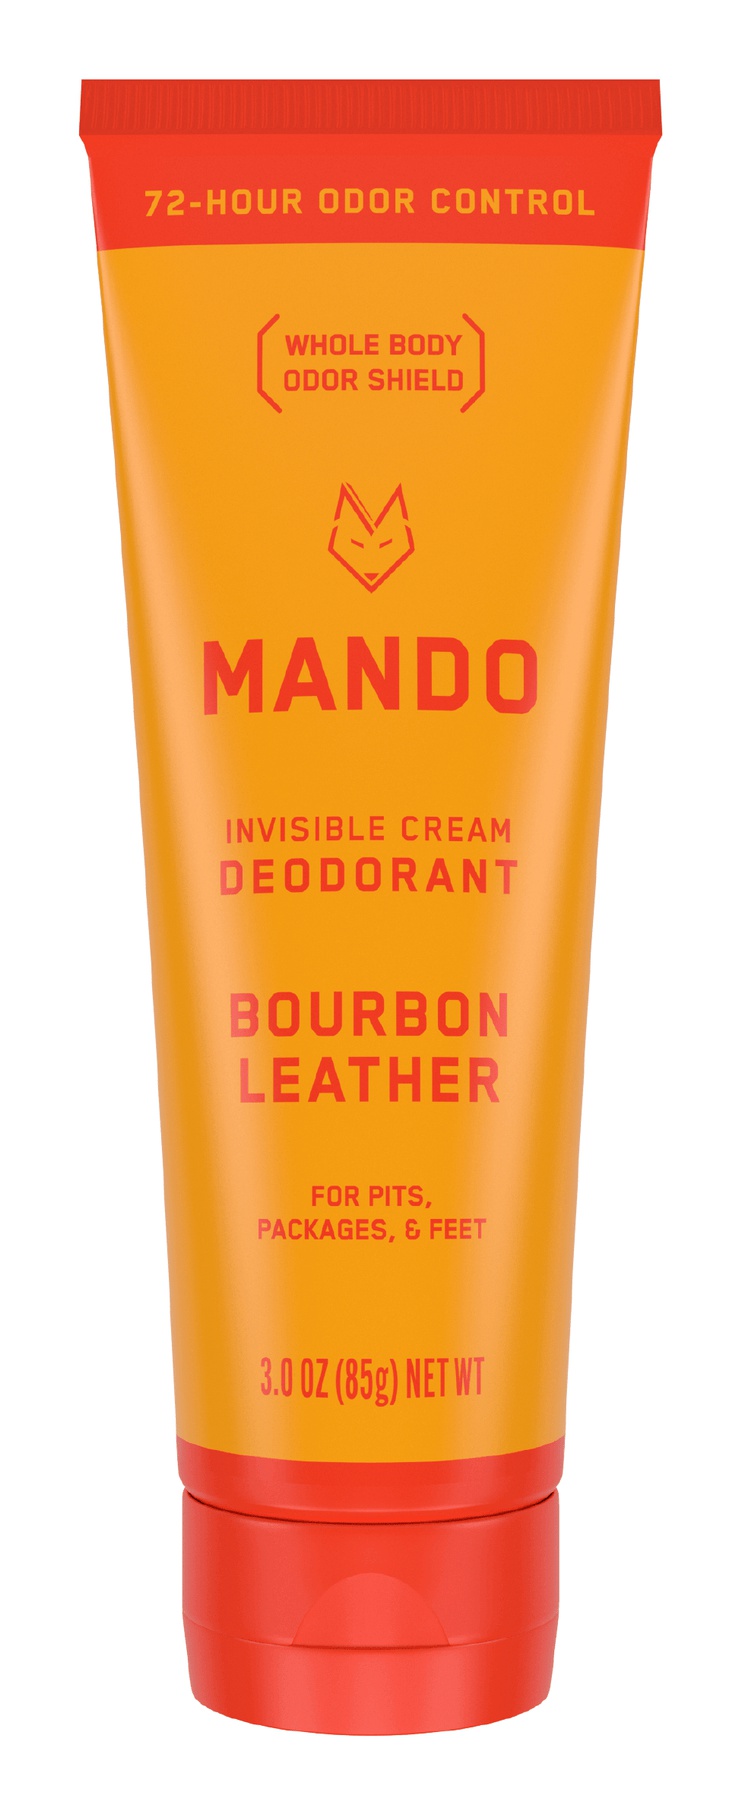 Mando Whole Body Deodorant - Invisible Cream Tube